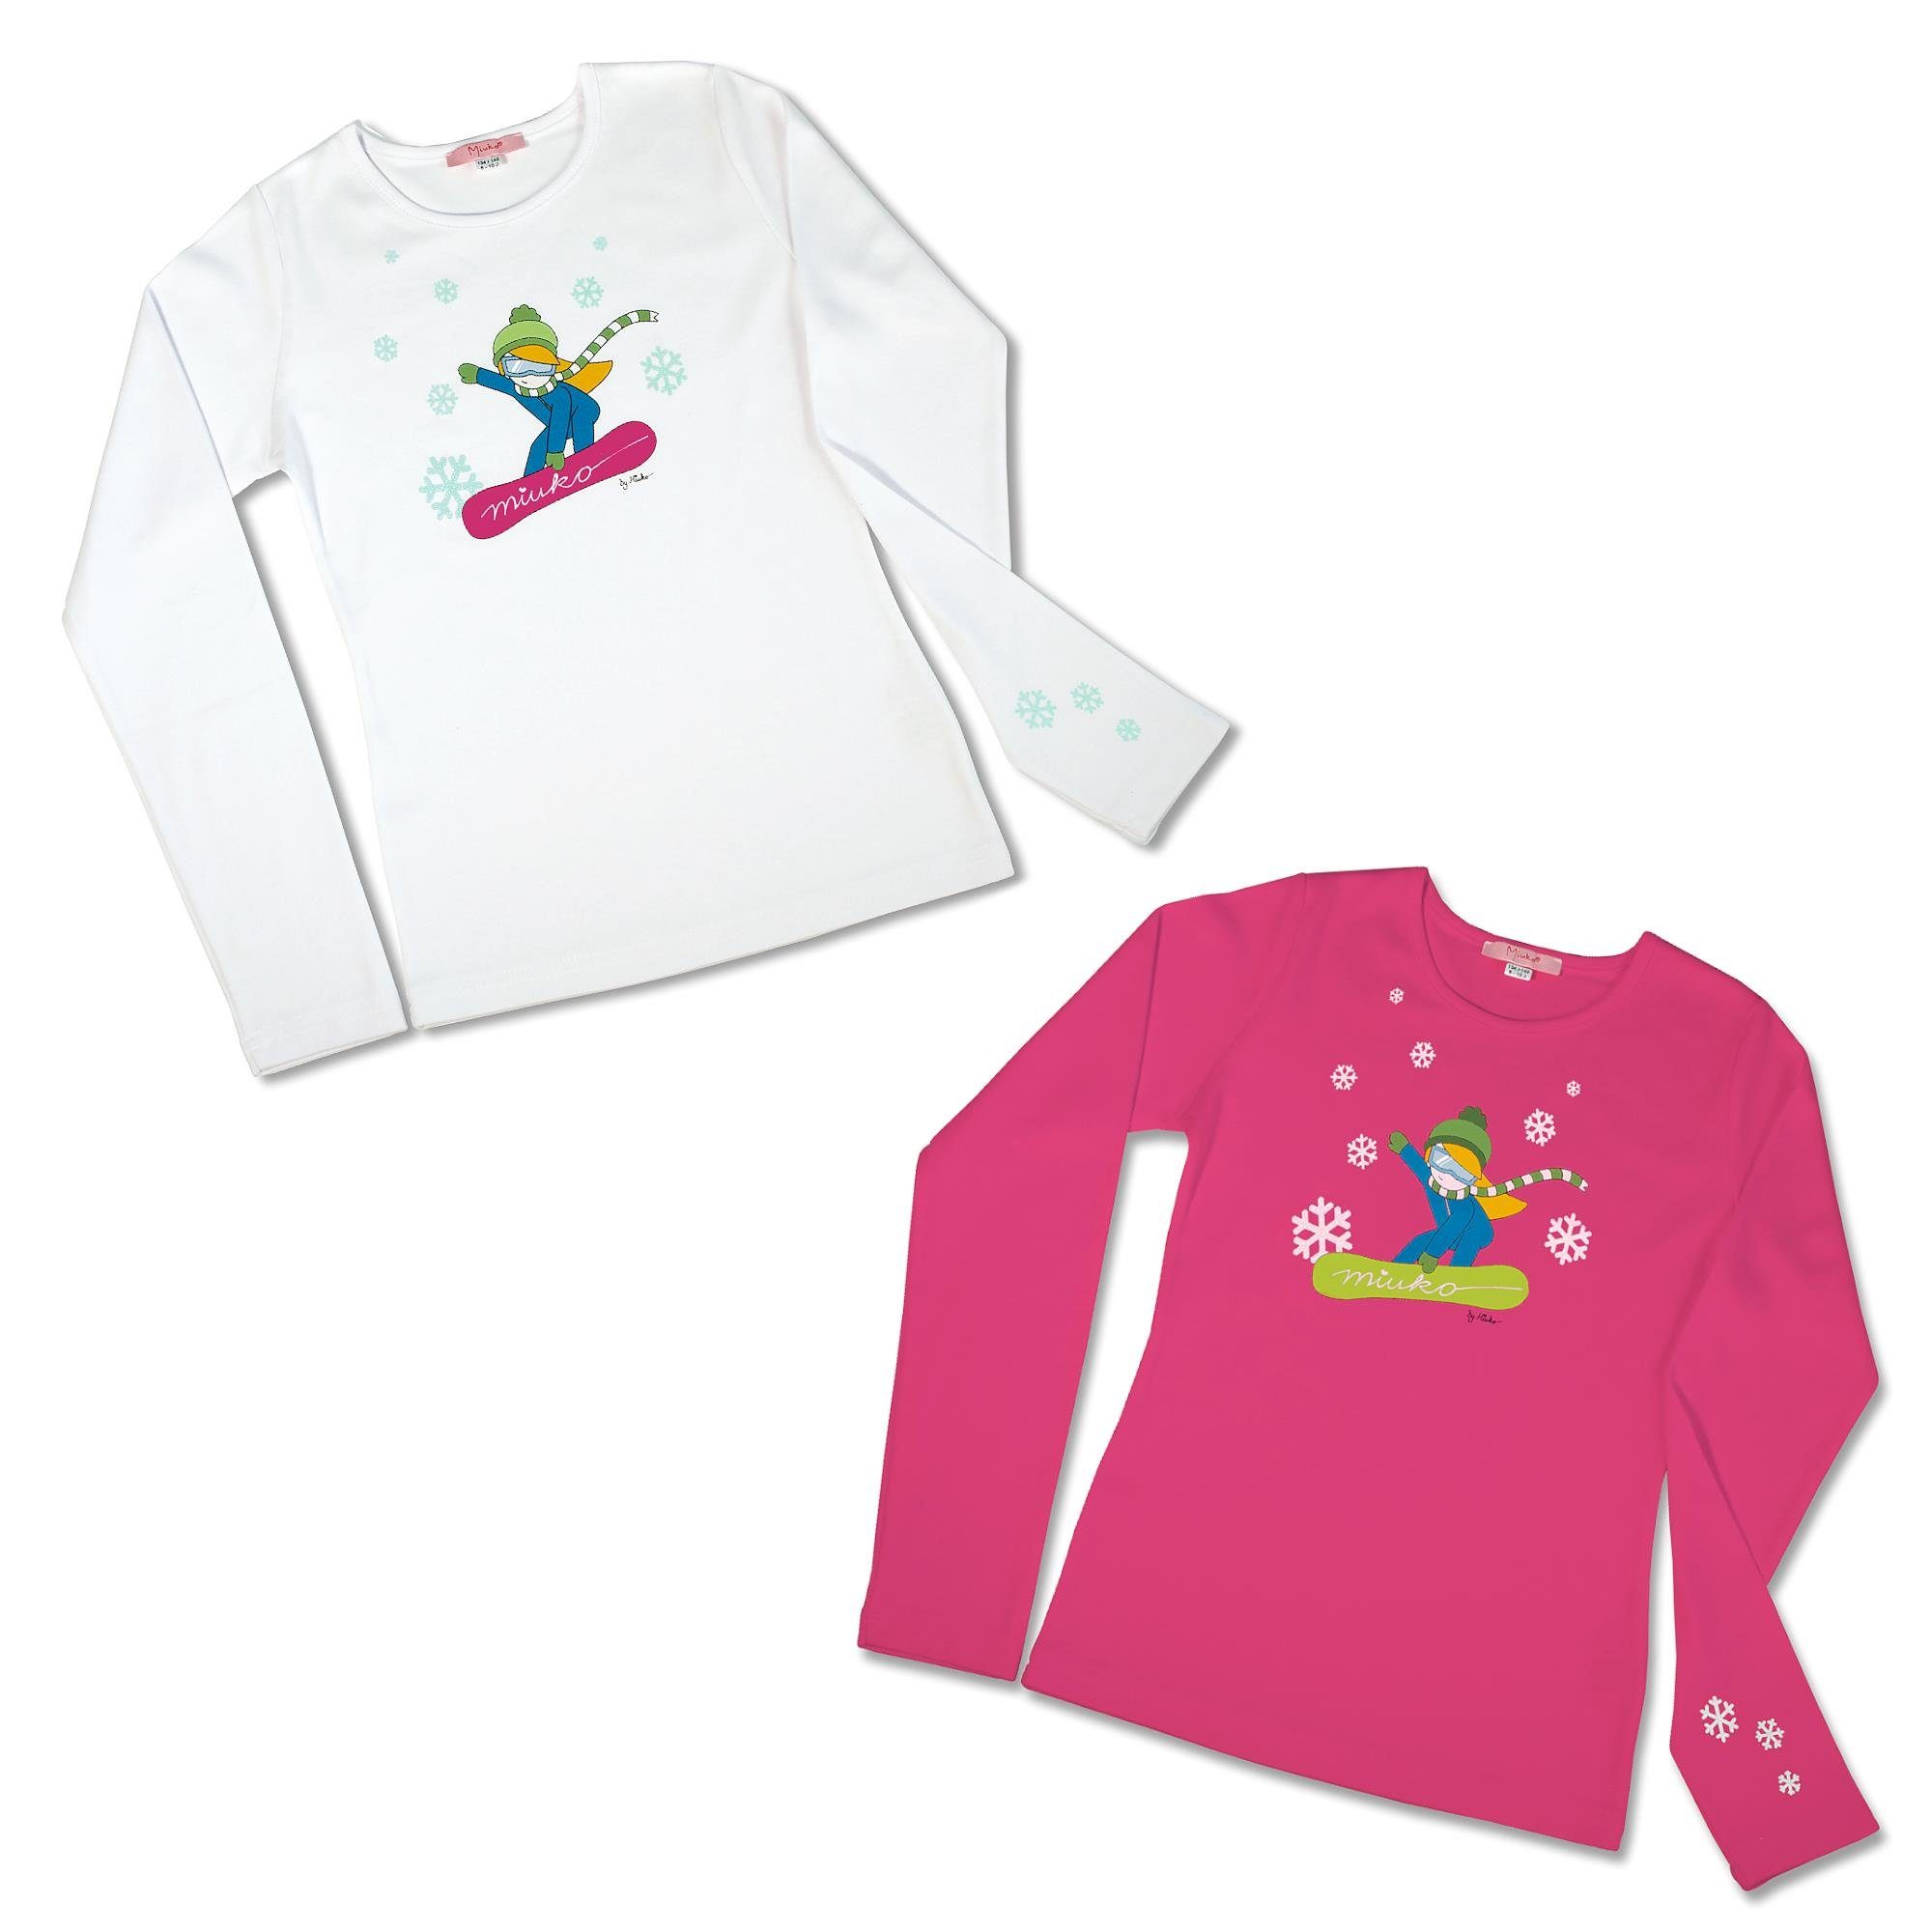 Motiv Mädchen 152 T-Shirt oder 134 Langarmshirt pink, weiß 128 122 langärmlig, 158 Miuko 100% 146 140 für 164 Baumwolle Snowboarderin